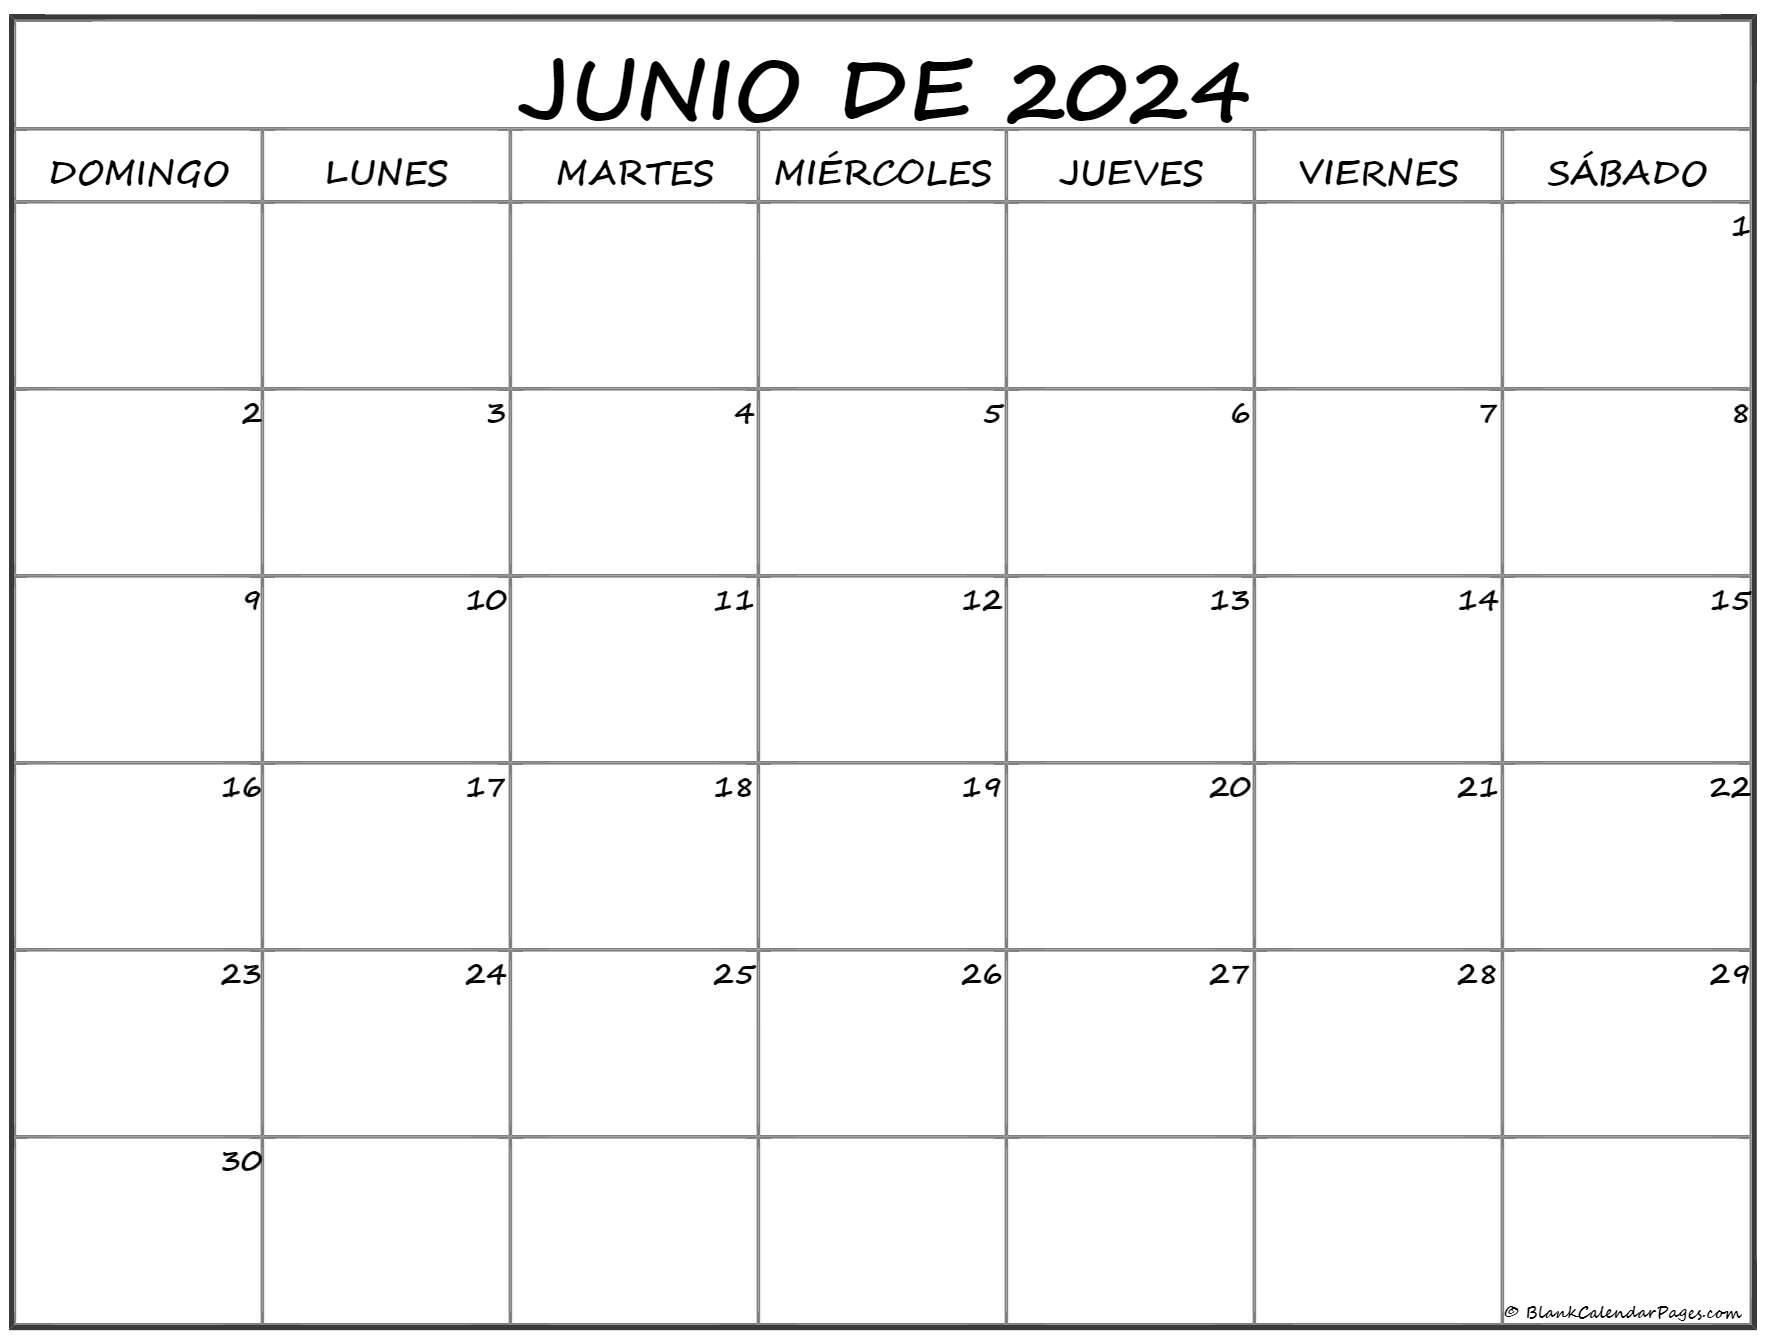 Calendario Junio 2024 Calendarios Su vrogue.co